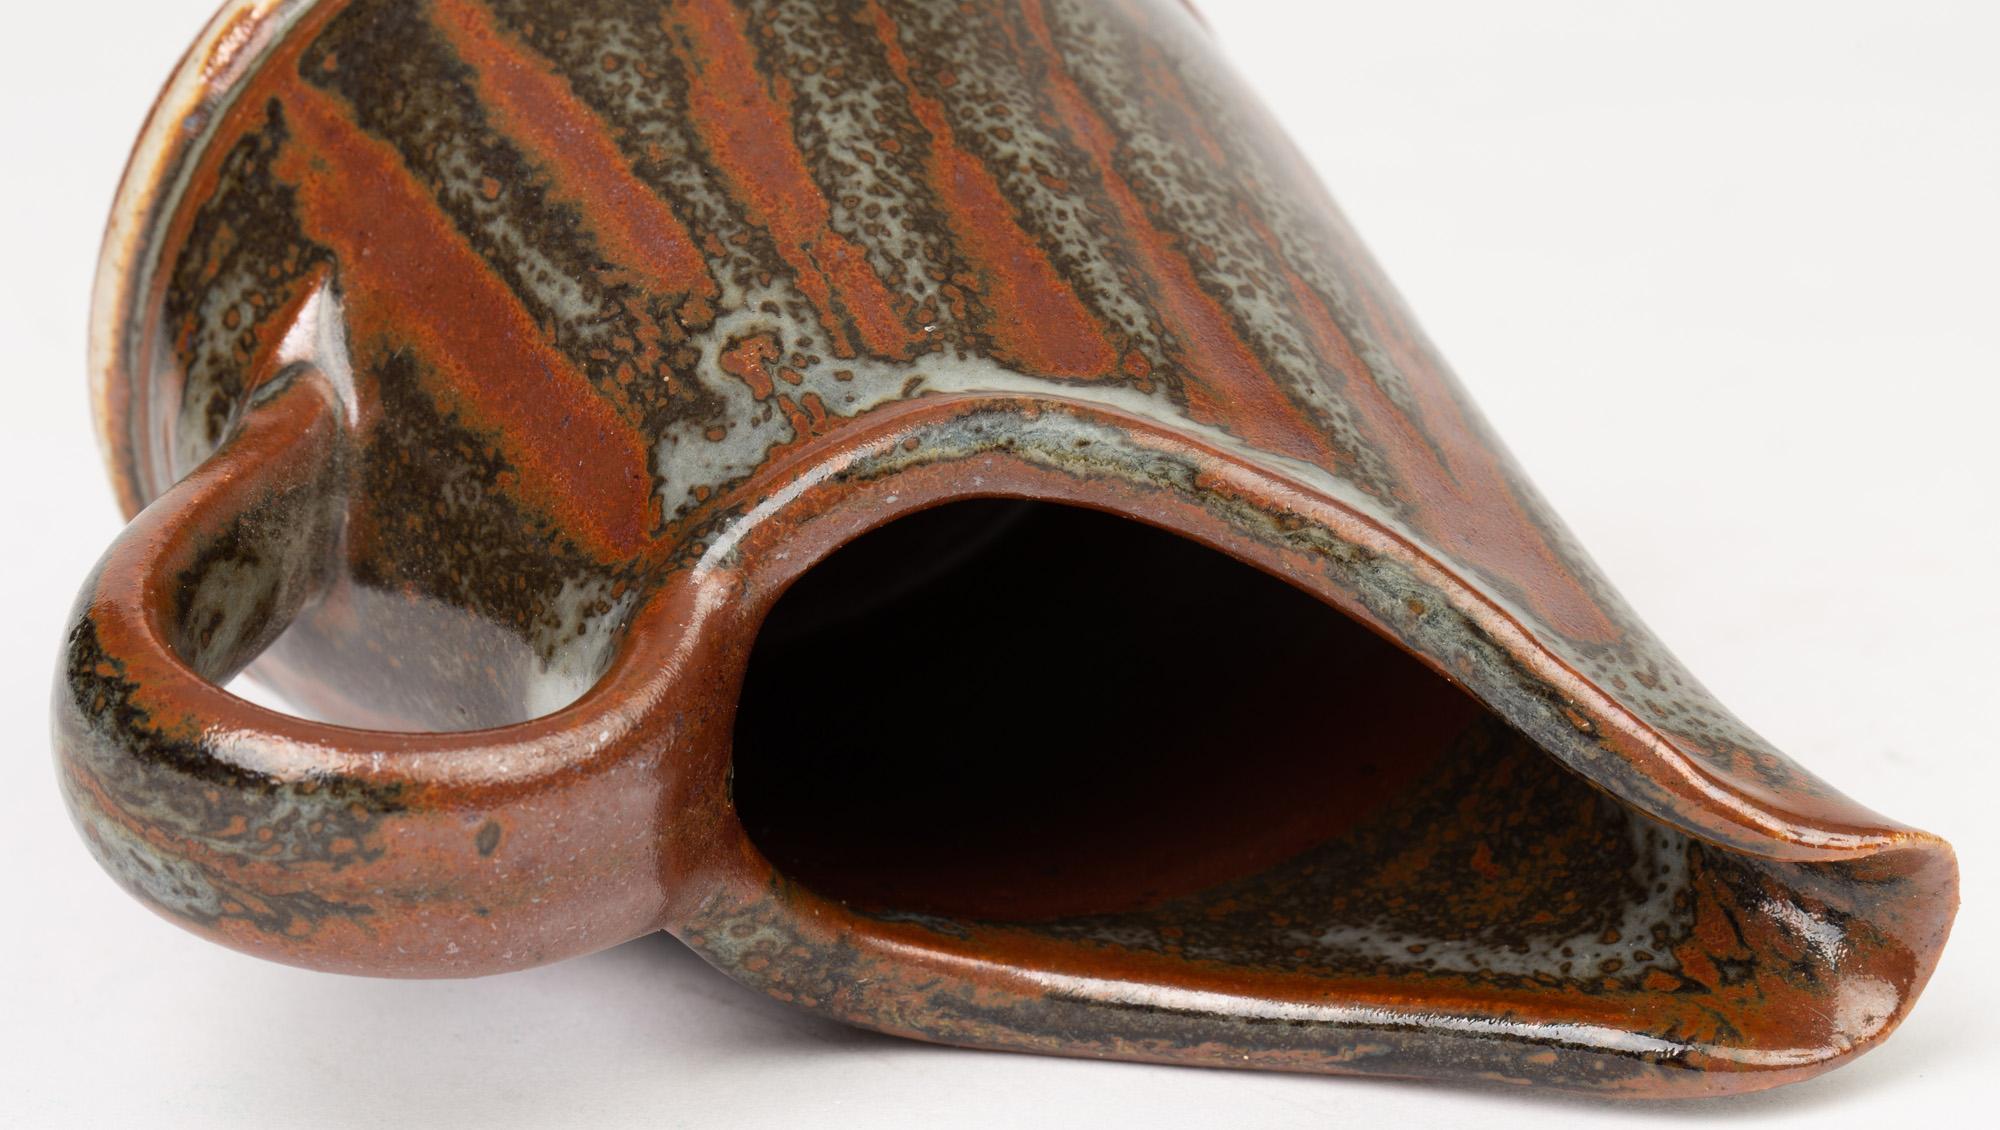 Parmi une vaste collection de poteries de studio, nous vous proposons cette très belle cruche en poterie de studio de John Leach, datée de 2009. John est membre de la célèbre famille Leach, fils de David Leach et petit-fils aîné de Bernard Leach. La